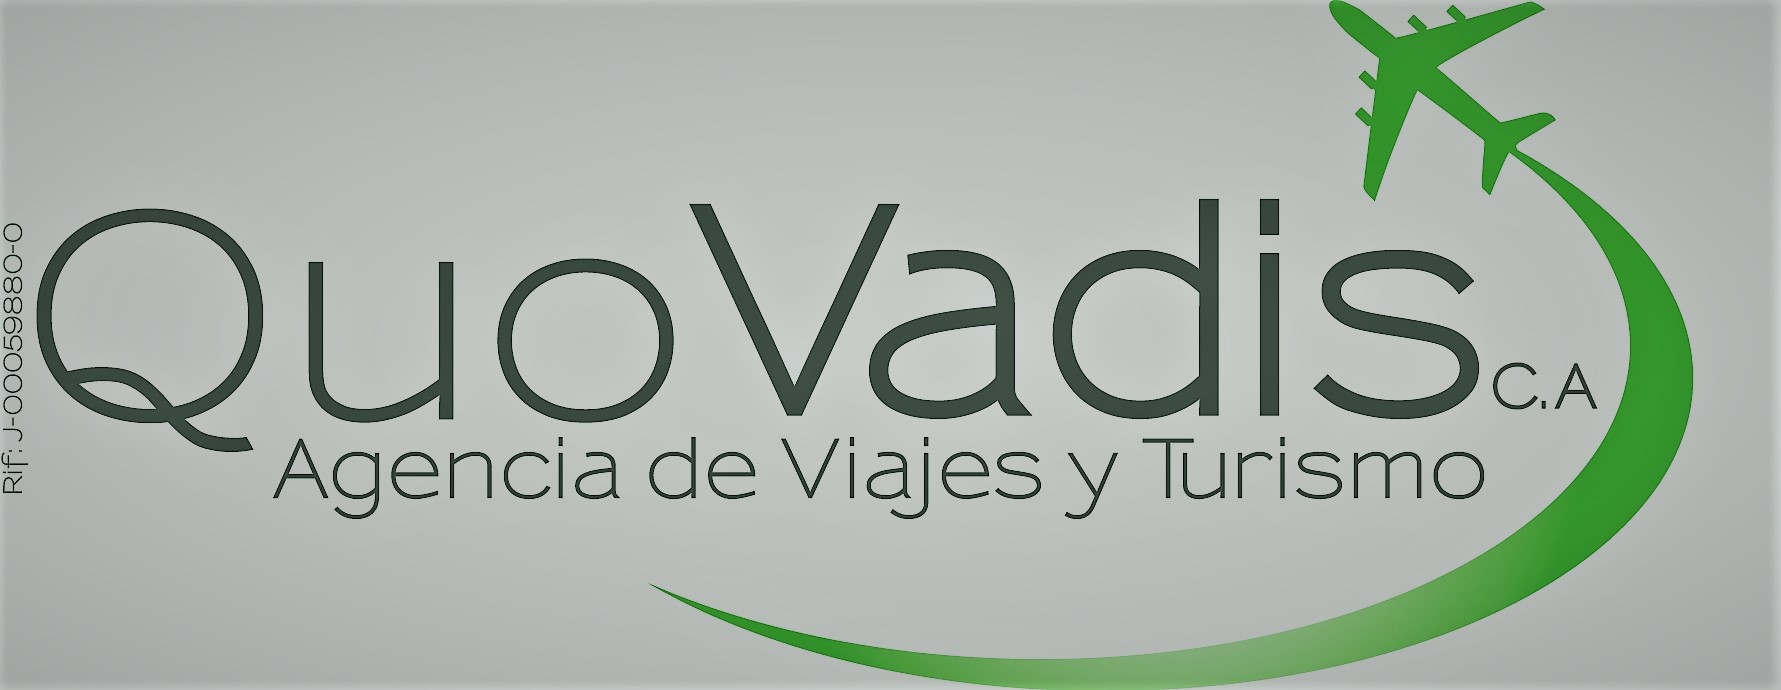 Logo Quovadis Agencia de Viajes